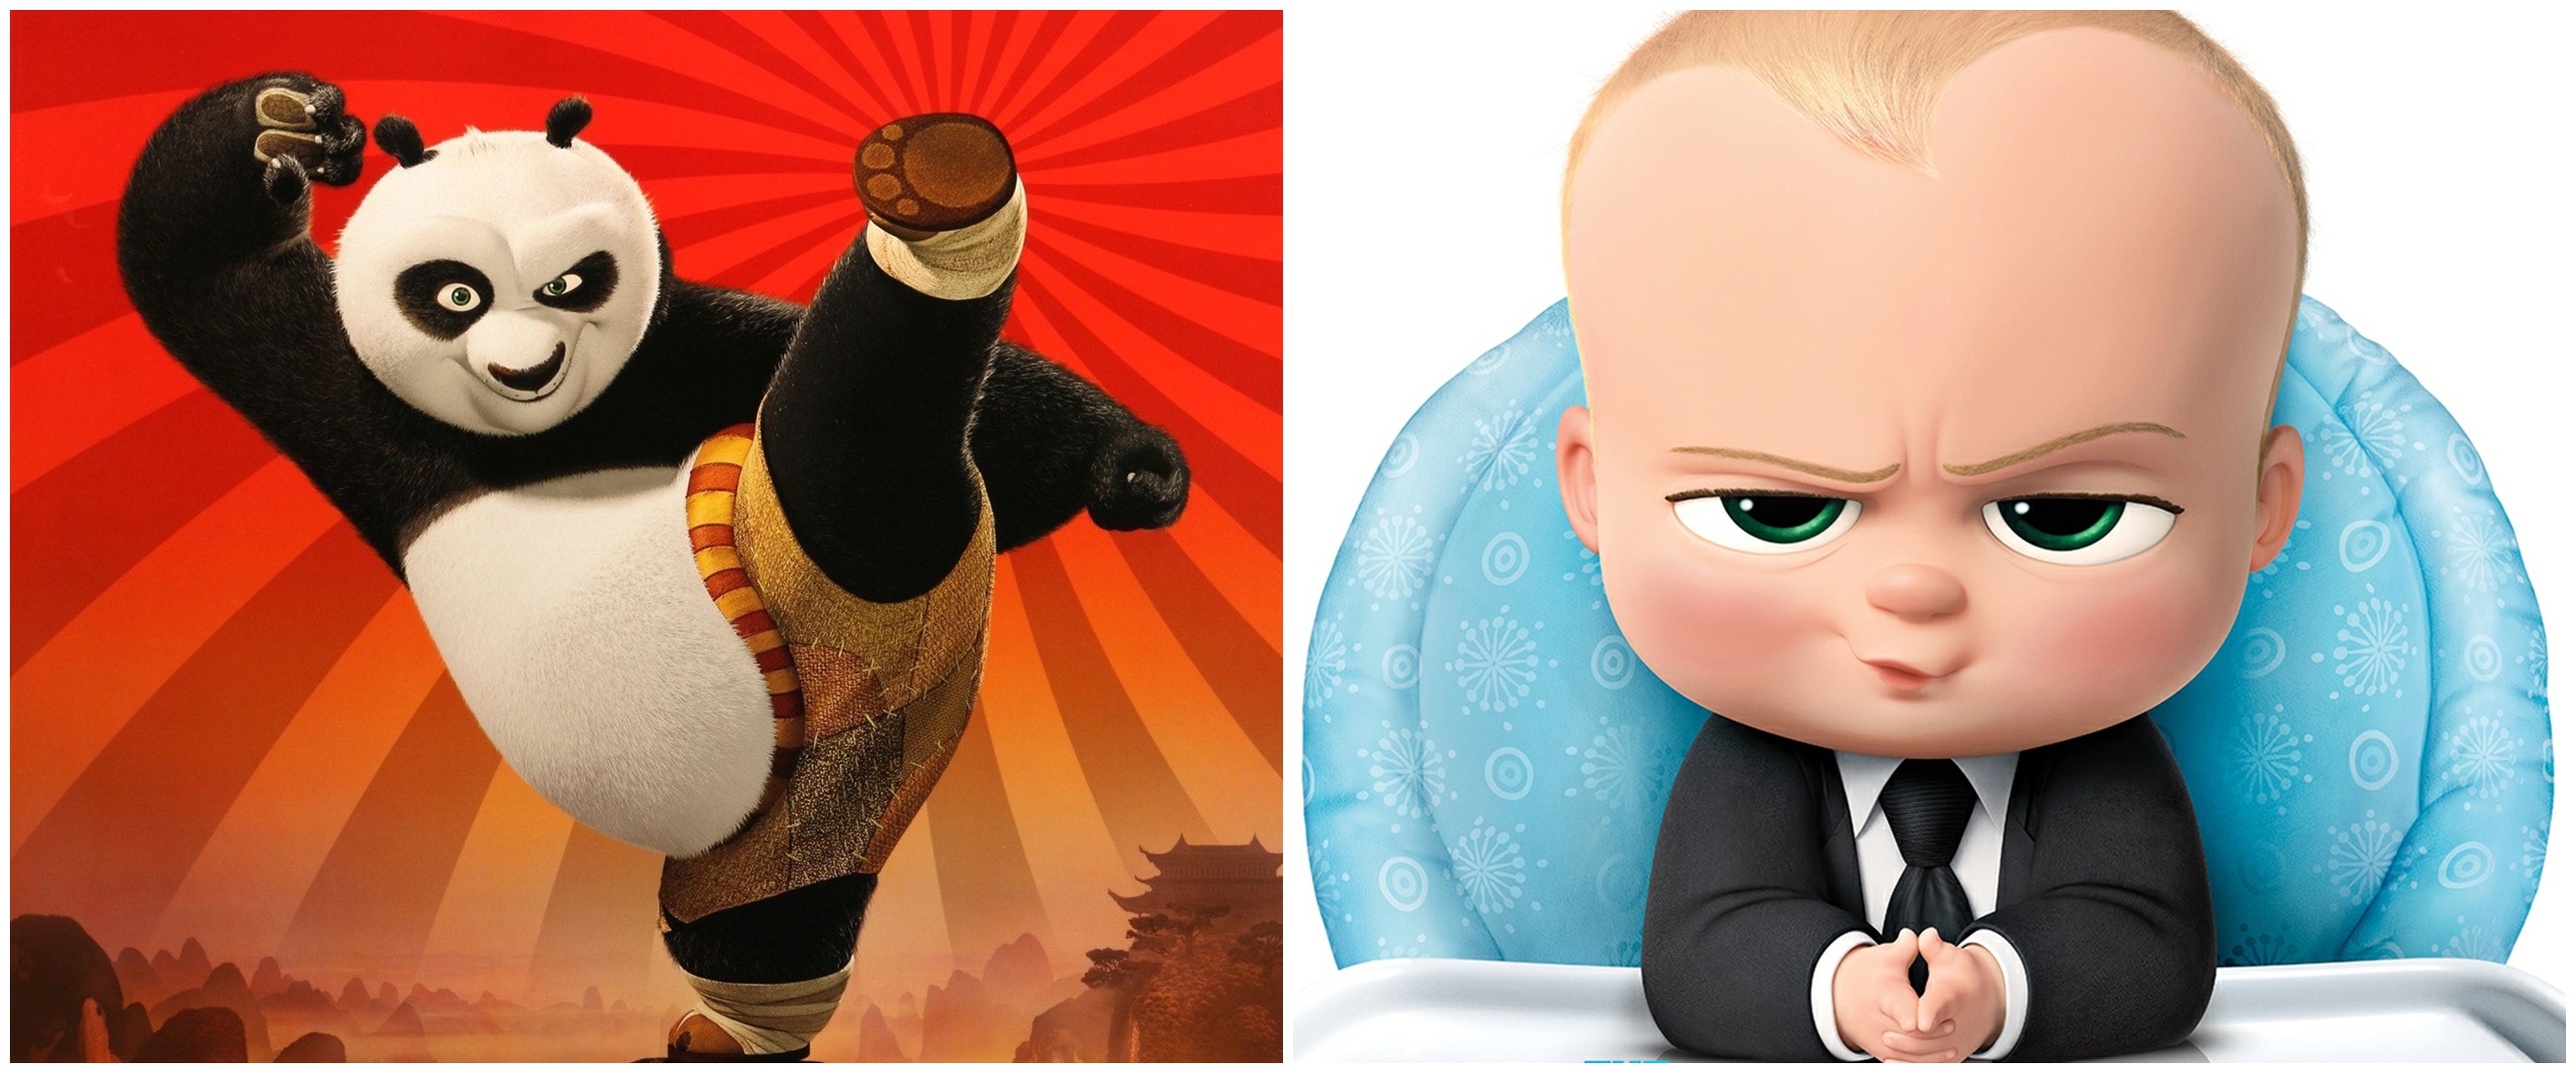 10 Film Animasi DreamWorks terbaik, petualangan hingga komedi